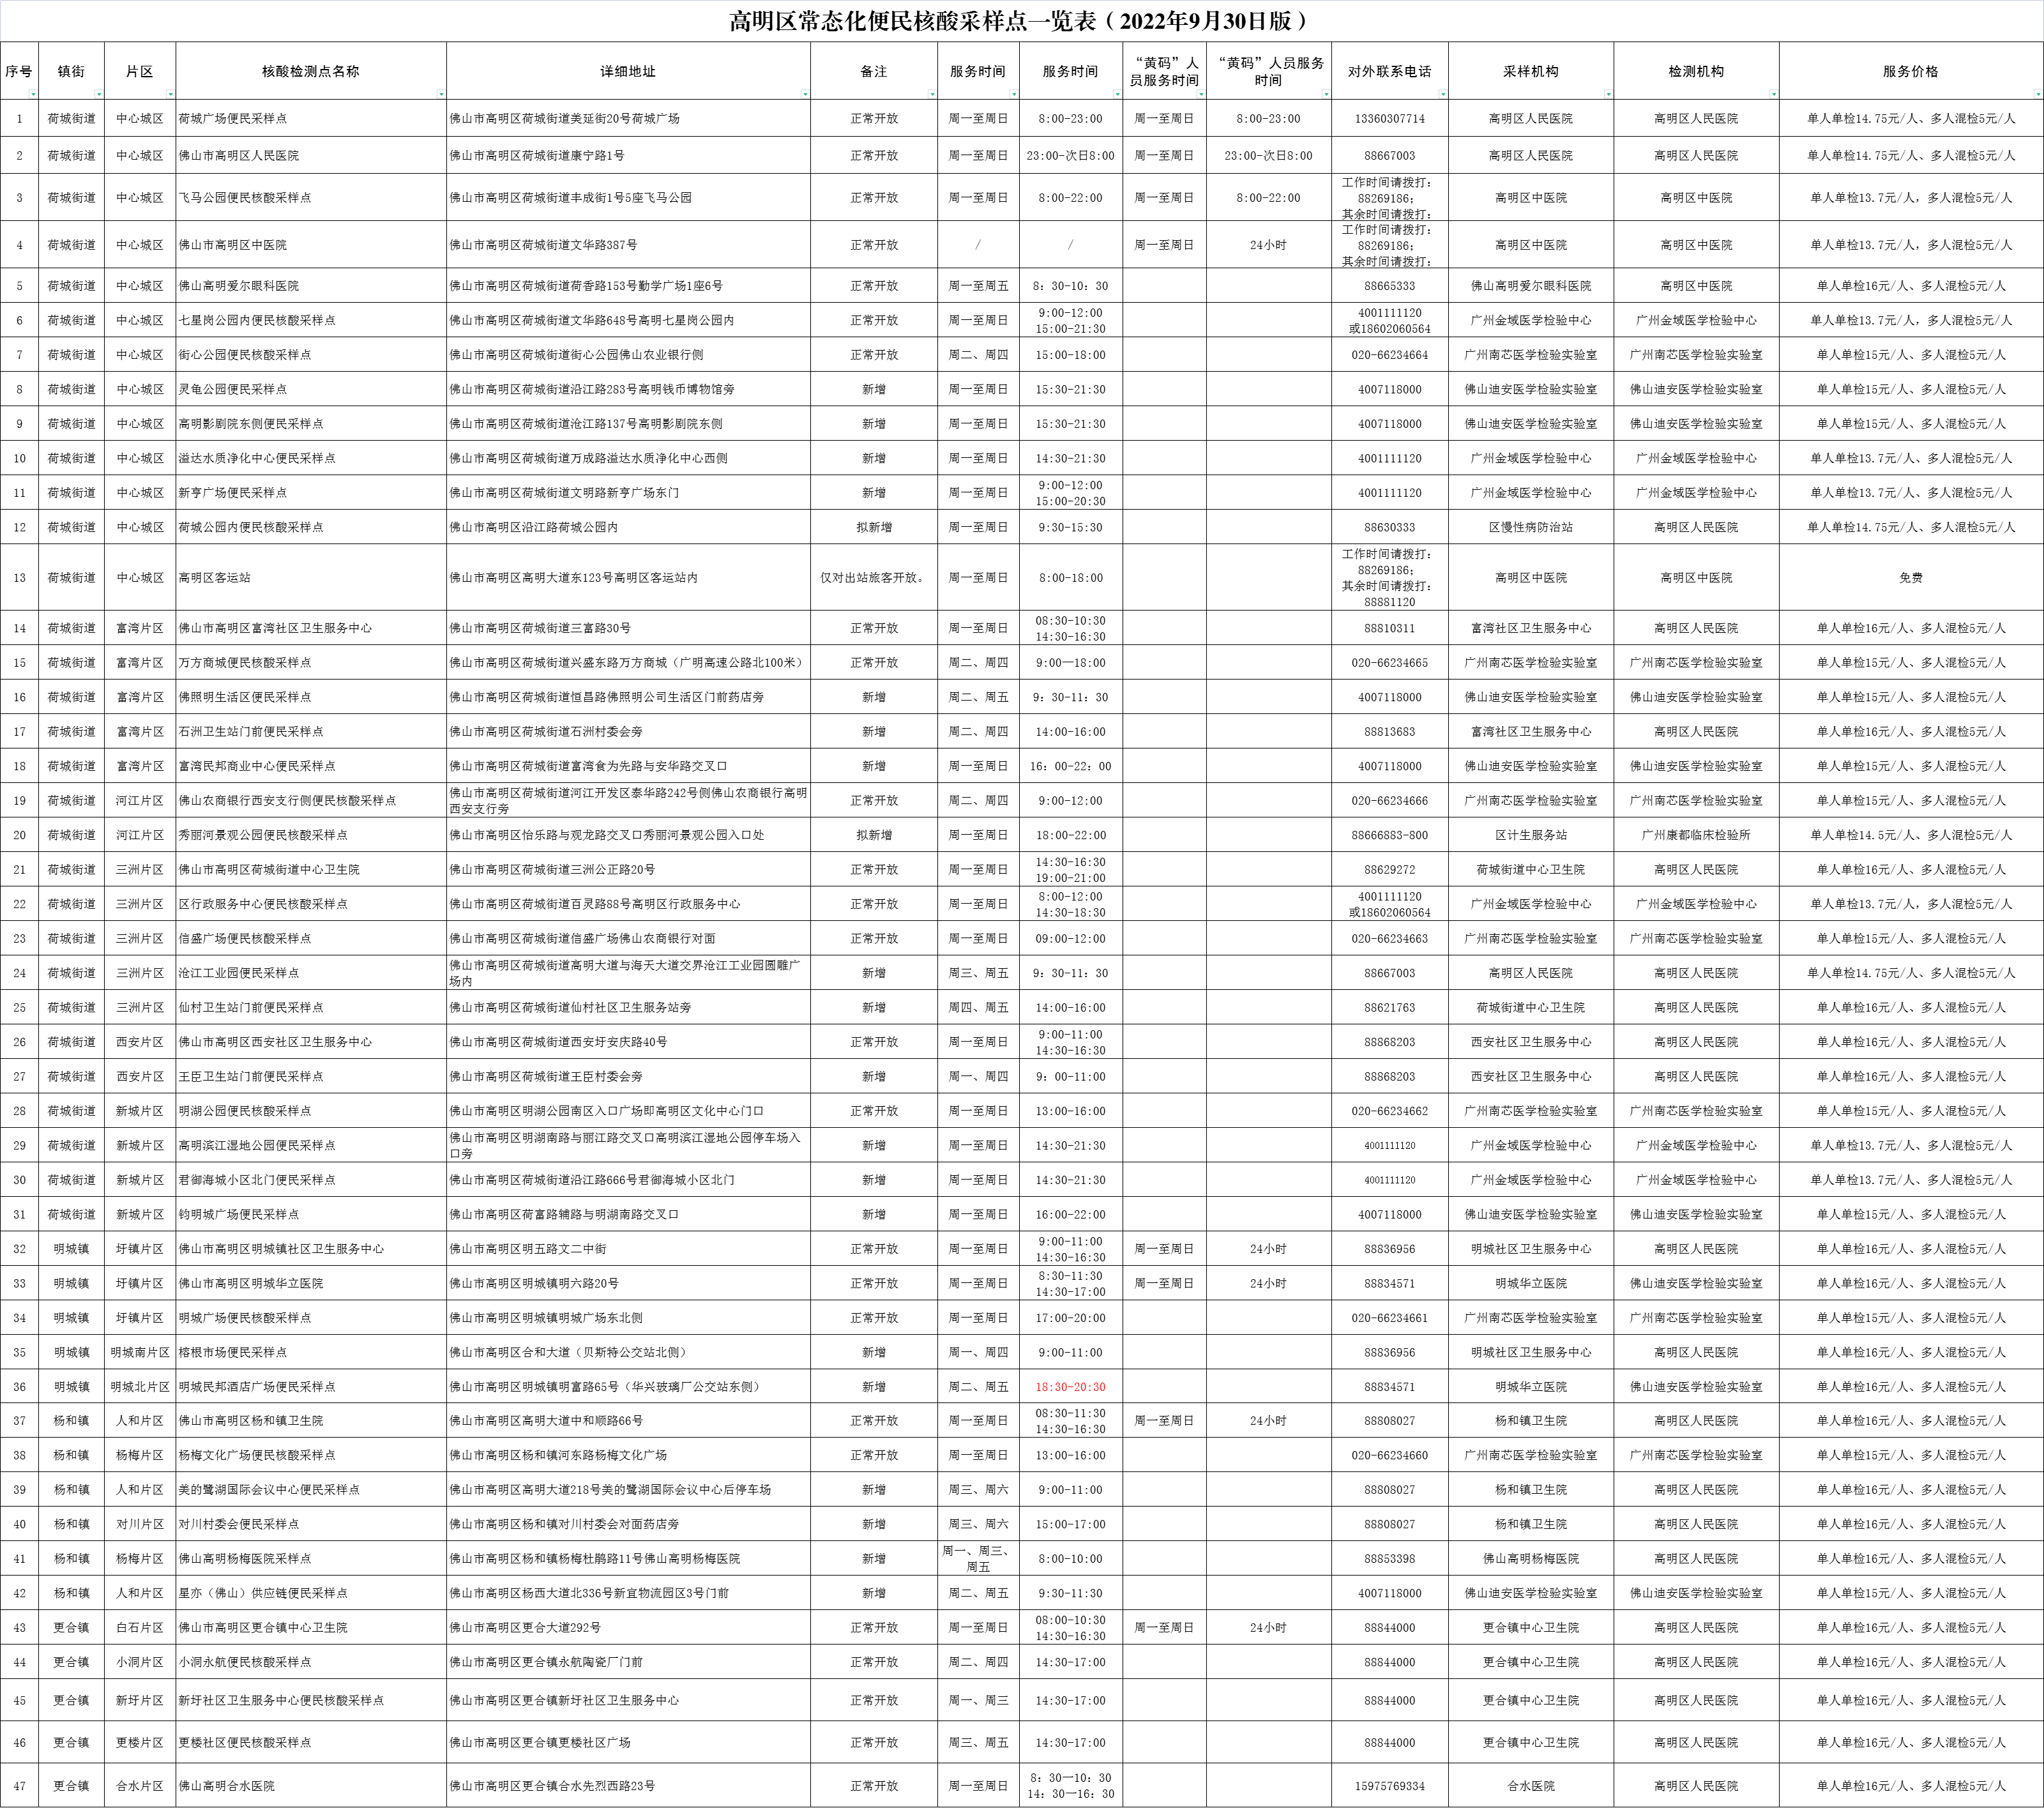 5.高明区常态化便民核酸采样点一览表（2022年9月30日版）—发布时间：2022年9月30日.png